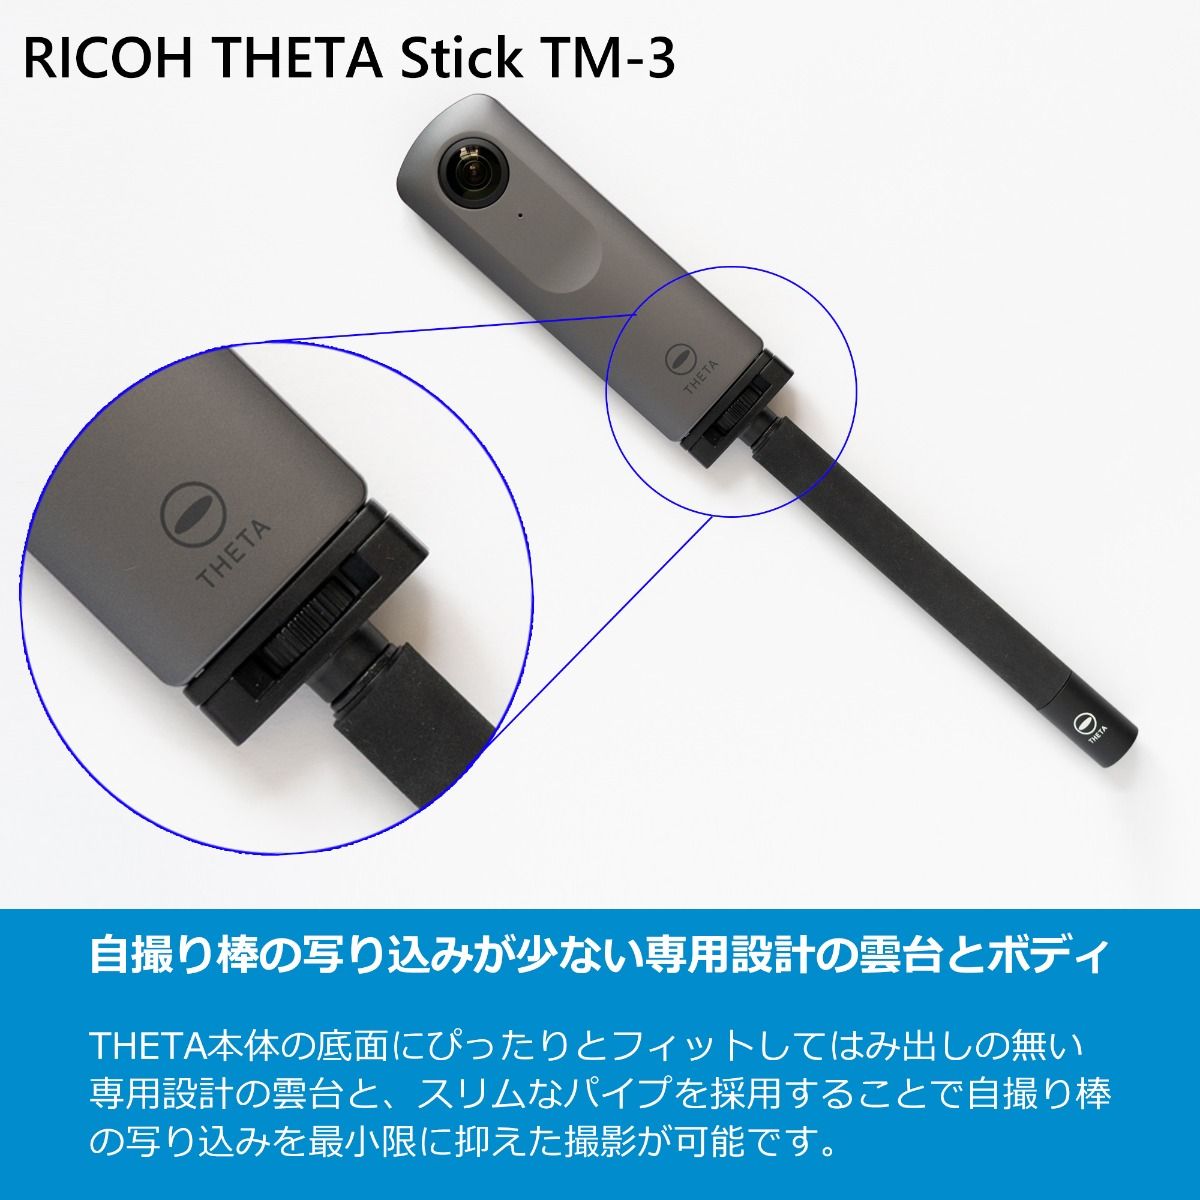 【アウトレット】 リコー THETA Stick TM-3 RICOH THETA（シータ）専用自撮り棒 小型軽量タイプ